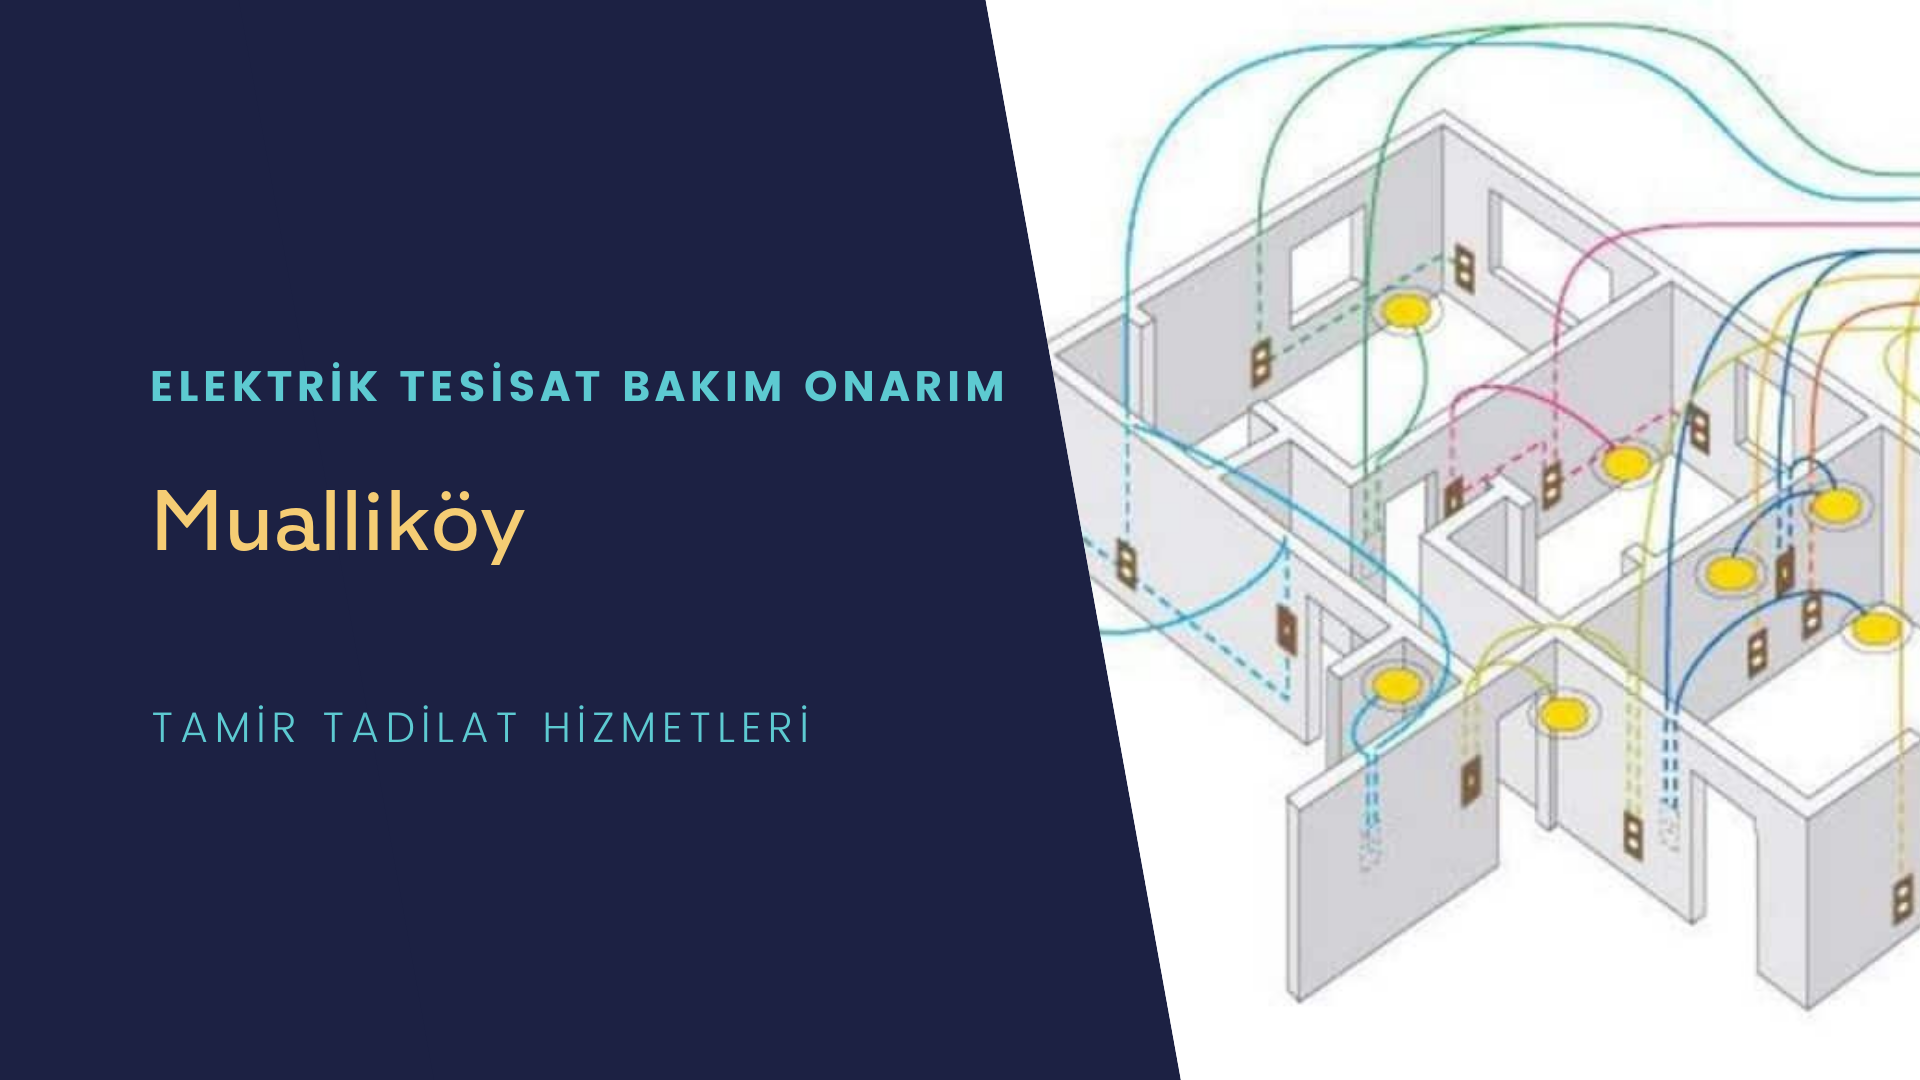 Mualliköy'de elektrik tesisatı ustalarımı arıyorsunuz doğru adrestenizi Mualliköy elektrik tesisatı ustalarımız 7/24 sizlere hizmet vermekten mutluluk duyar.